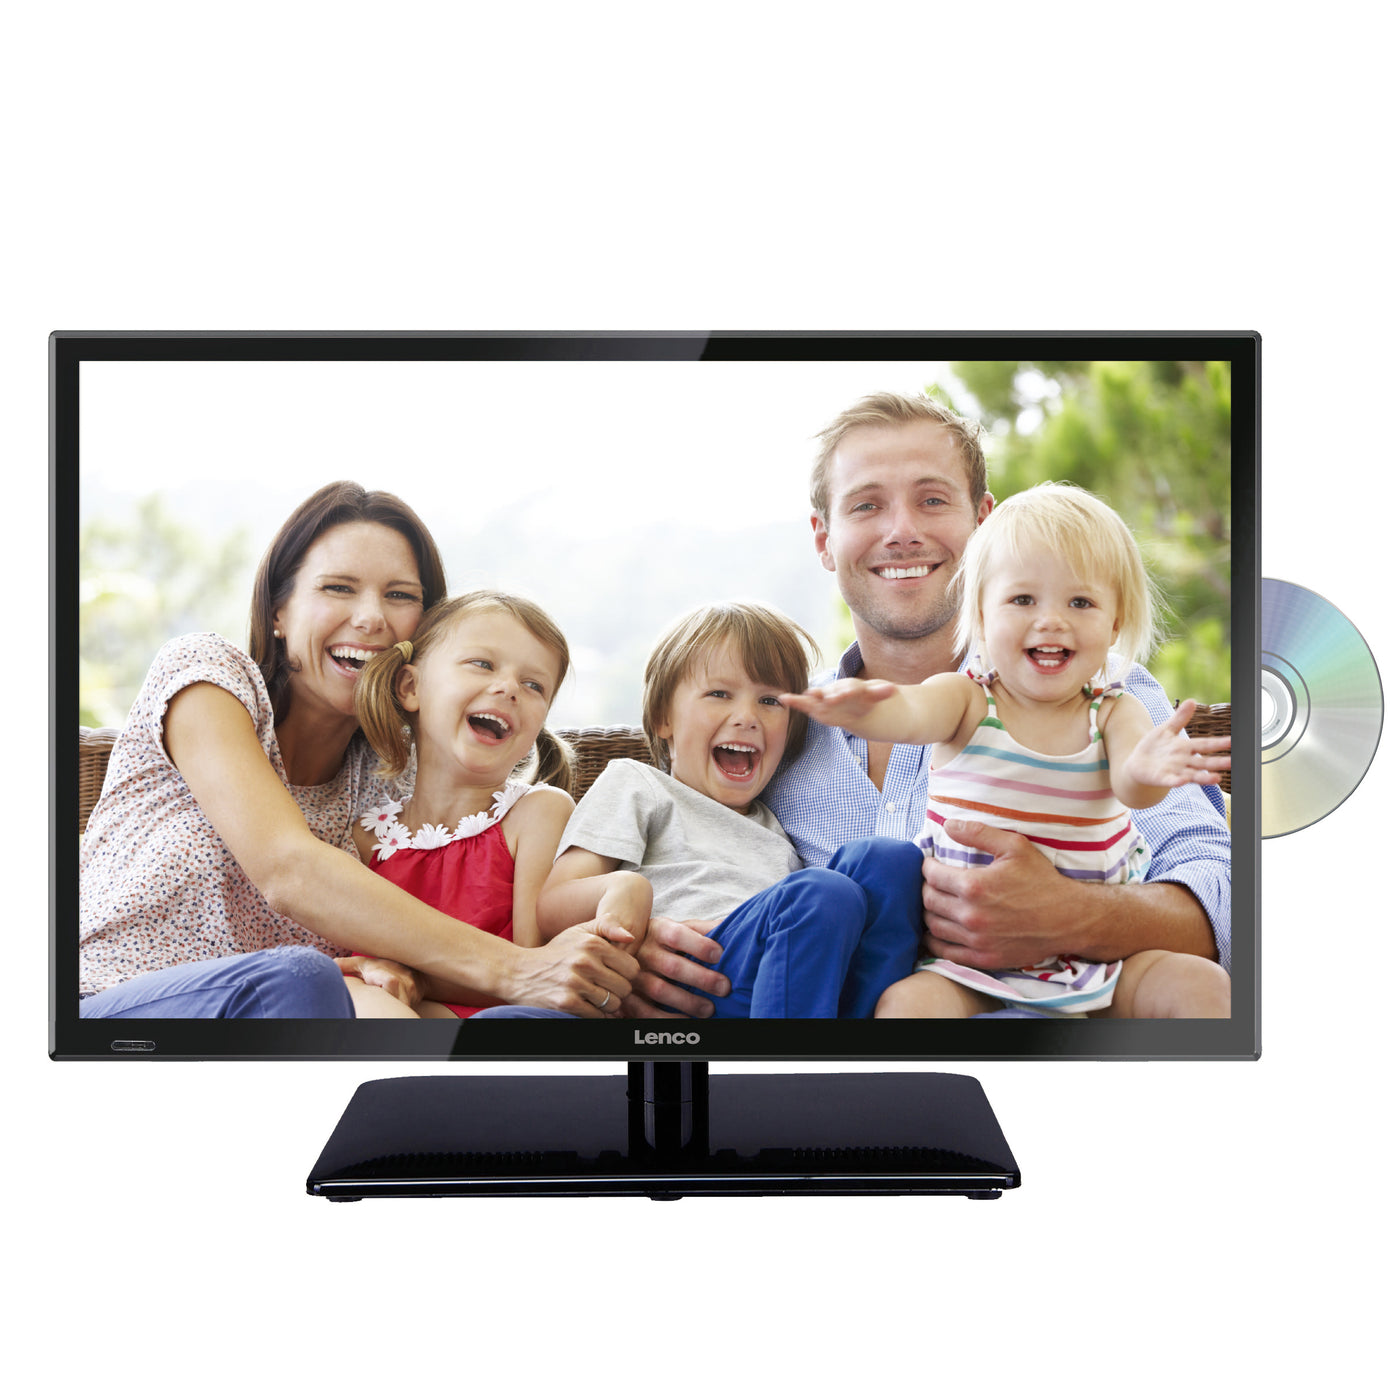 LENCO DVL-240 23,6-calowy telewizor LED Full HD - DVB-t2 - DVD - zasilacz samochodowy - Czarny